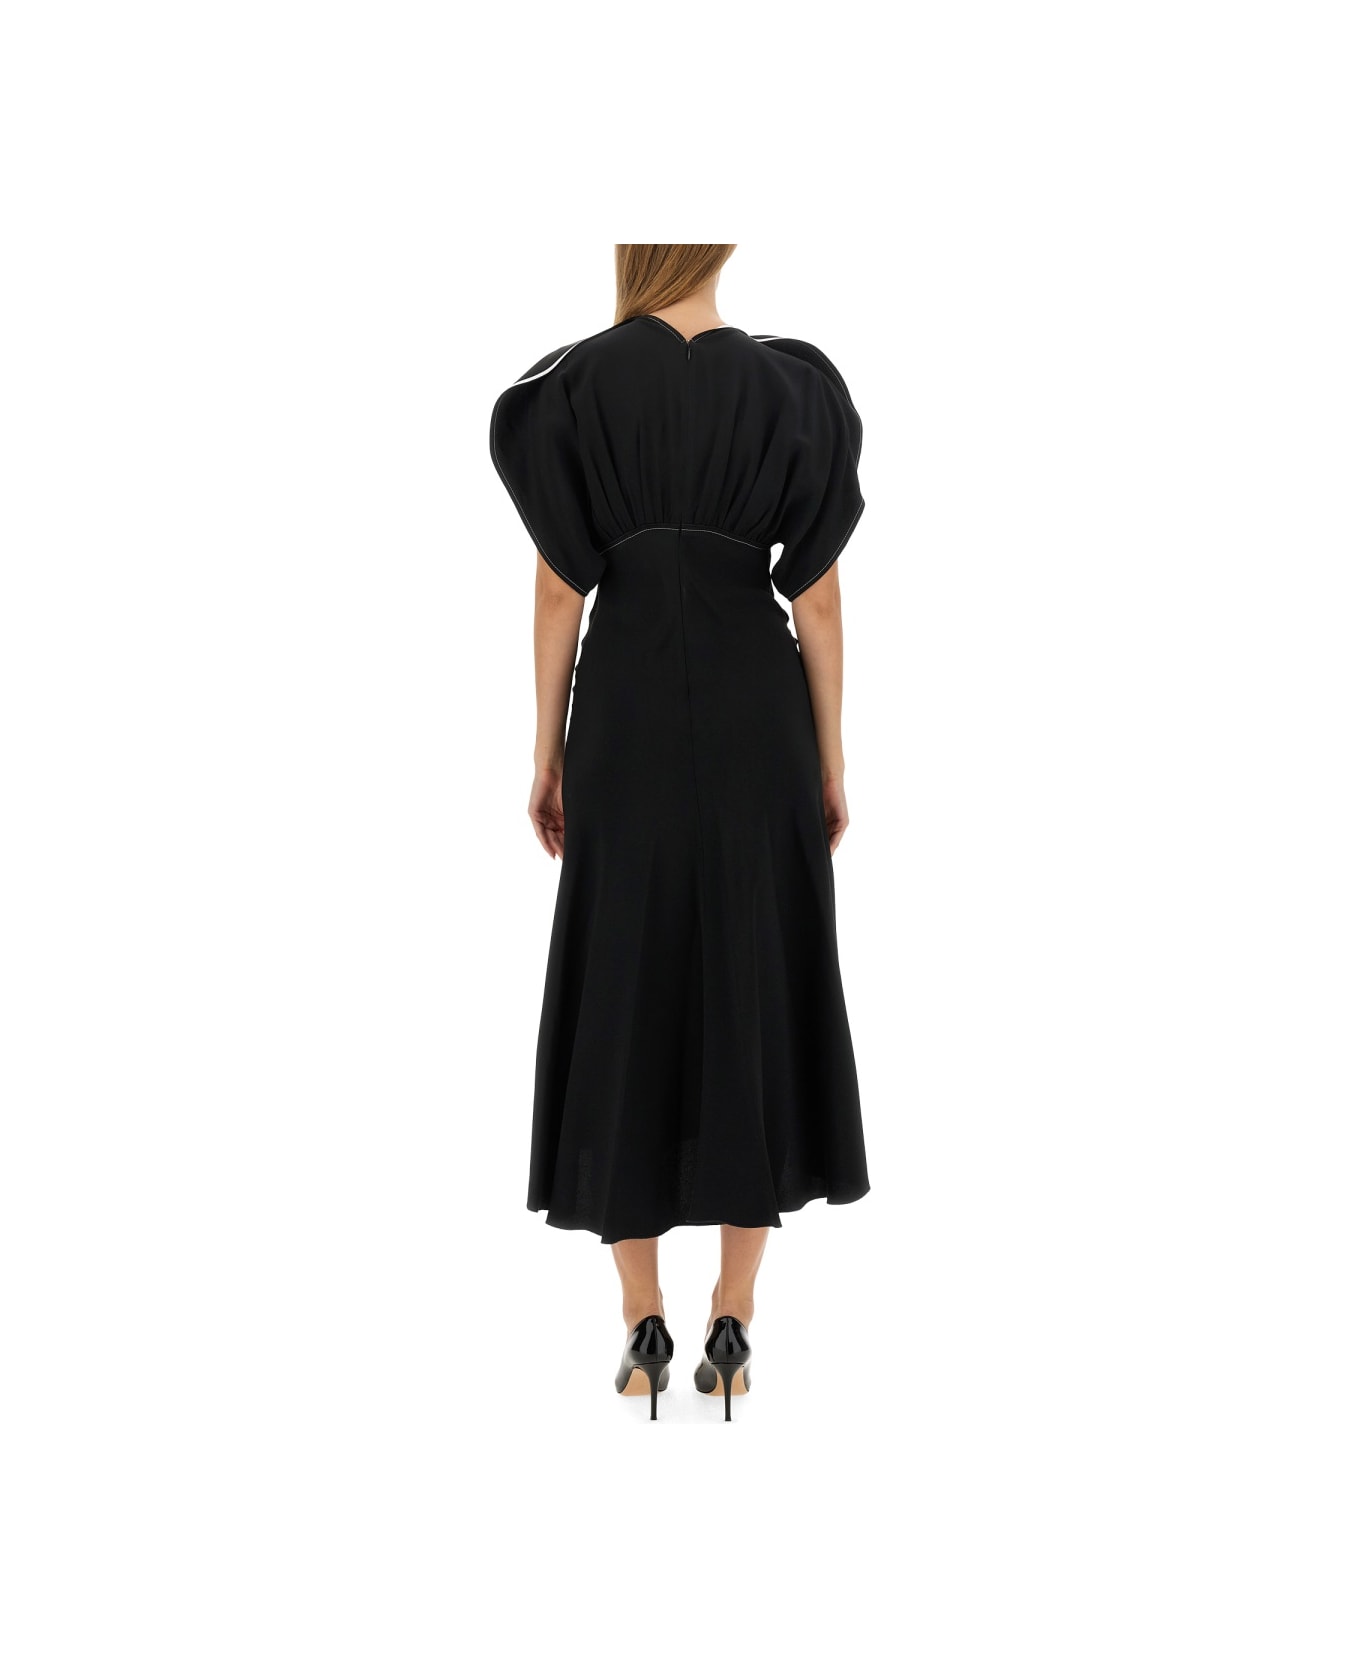 Victoria Beckham Midi Dress - BLACK